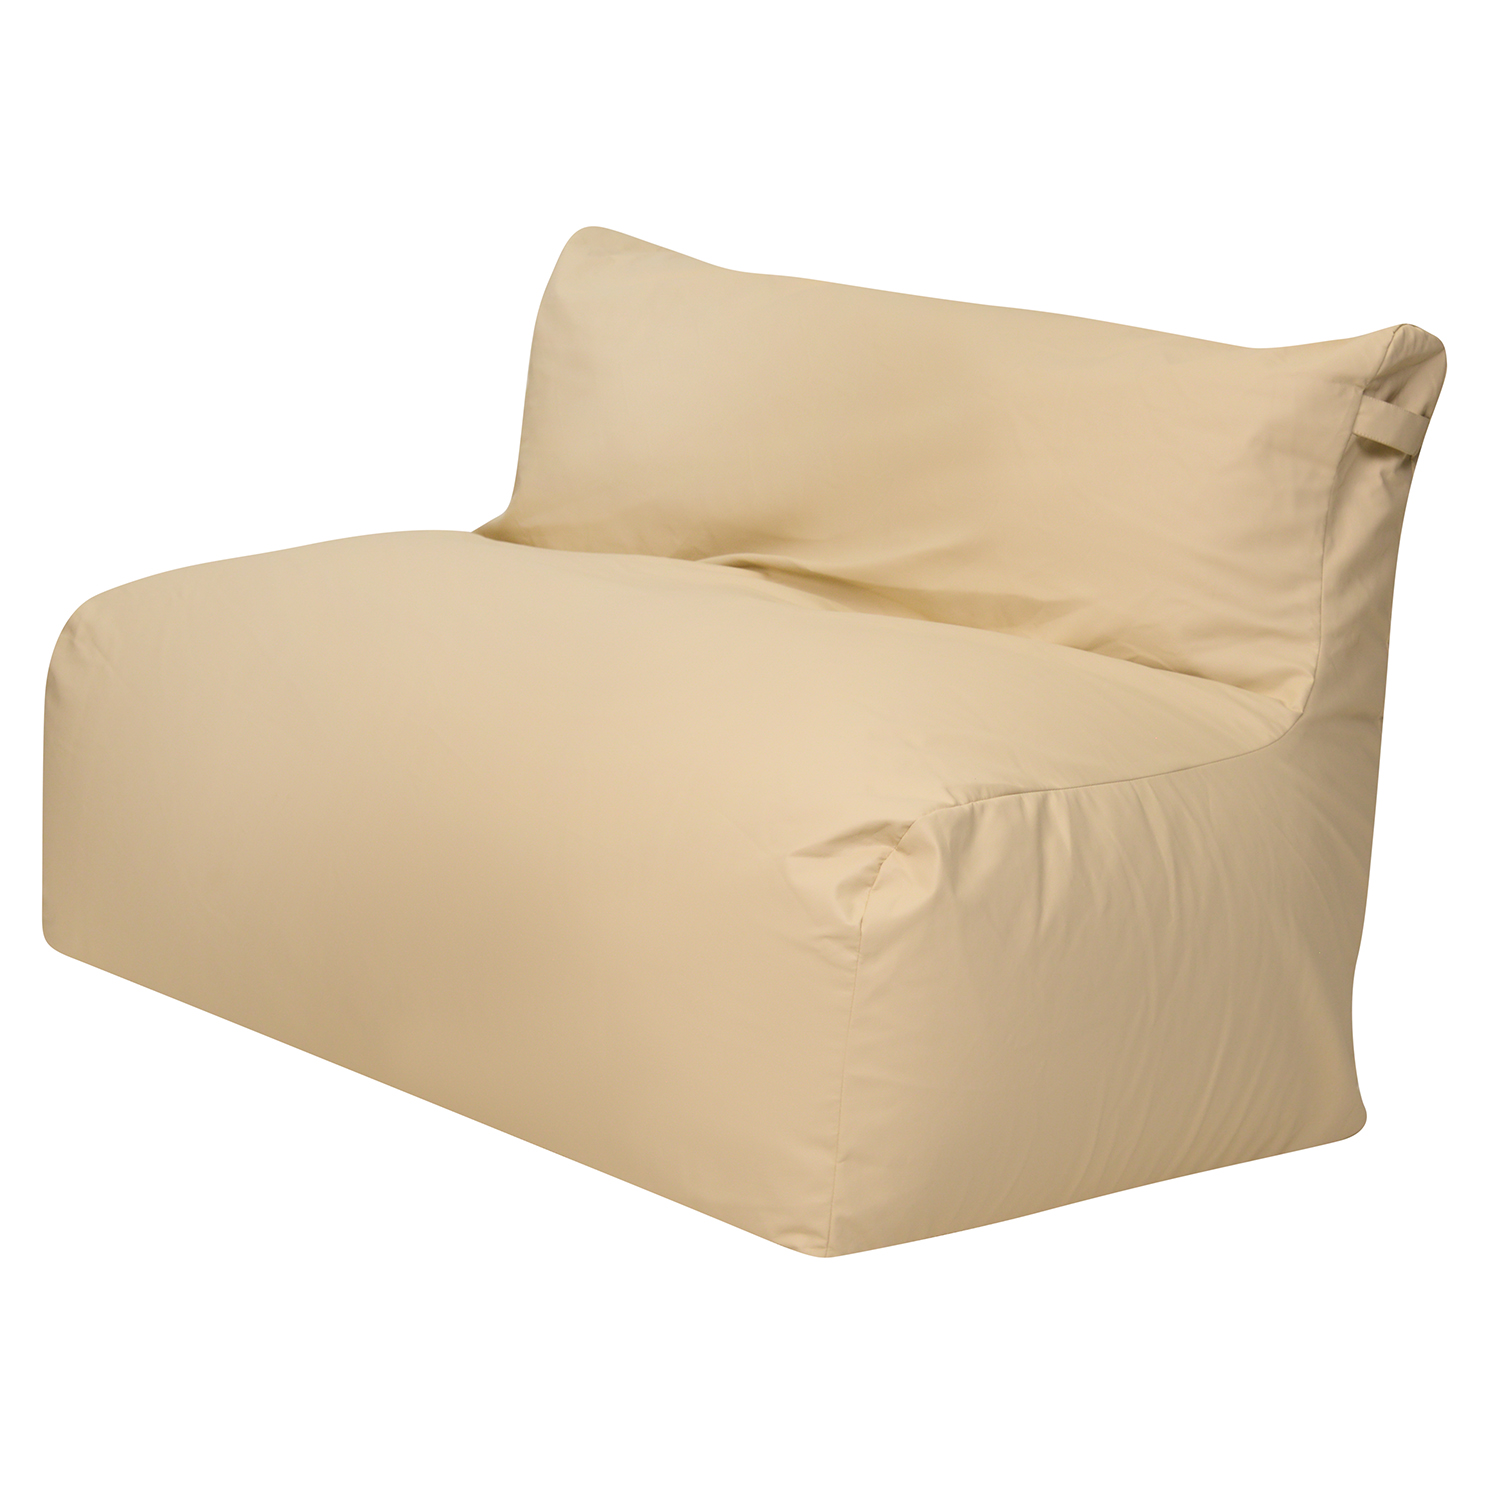 фото Бескаркасный диван модерн светло-бежевый экокожа, классический dreambag